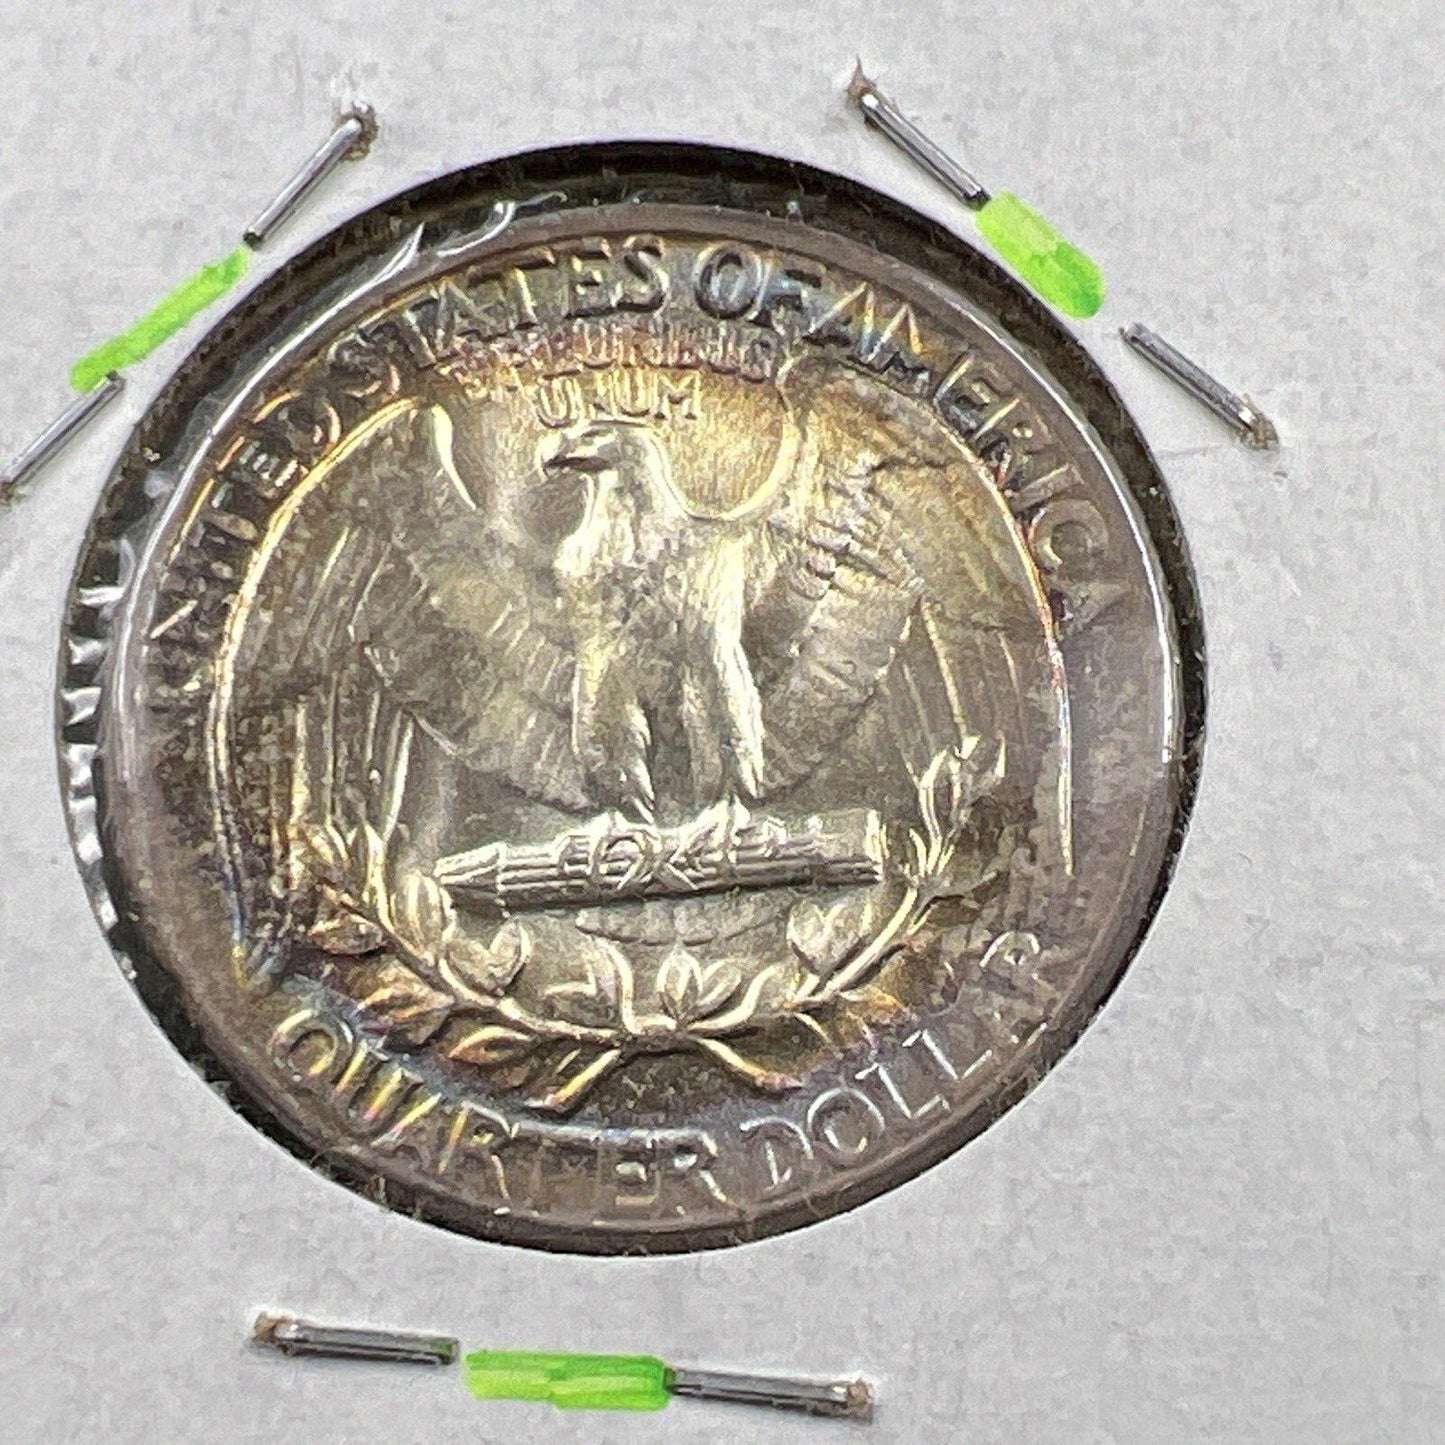 1957 P Washington 25c Silver Quarter Coin Gem BU UNC PQ * Star Rainbow Toning